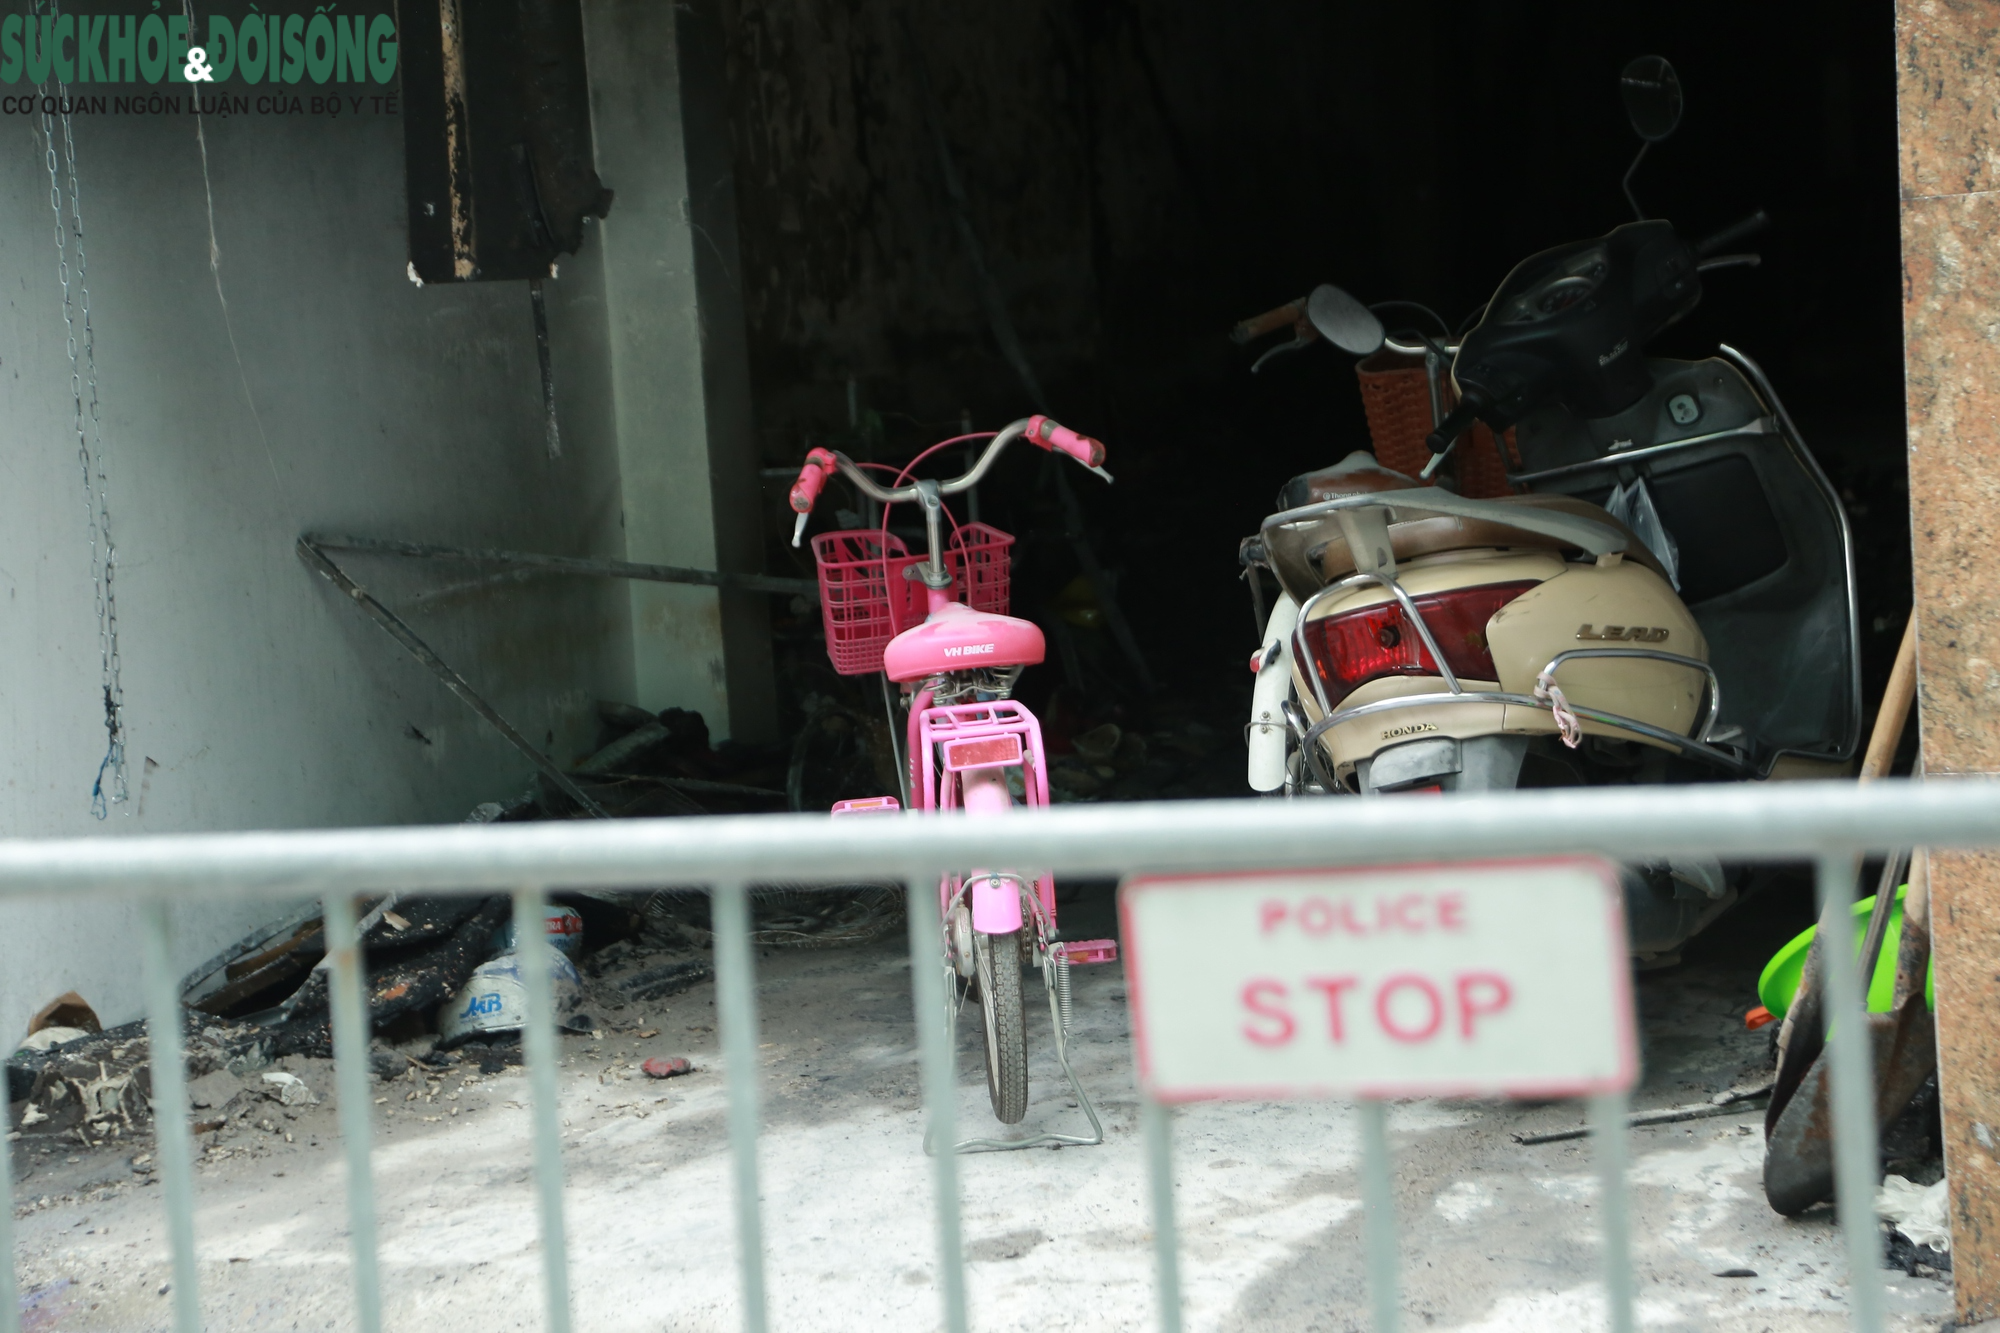 Nguyên nhân ban đầu vụ cháy nhà ở Hà Nội khiến 4 bà cháu tử vong - Ảnh 4.